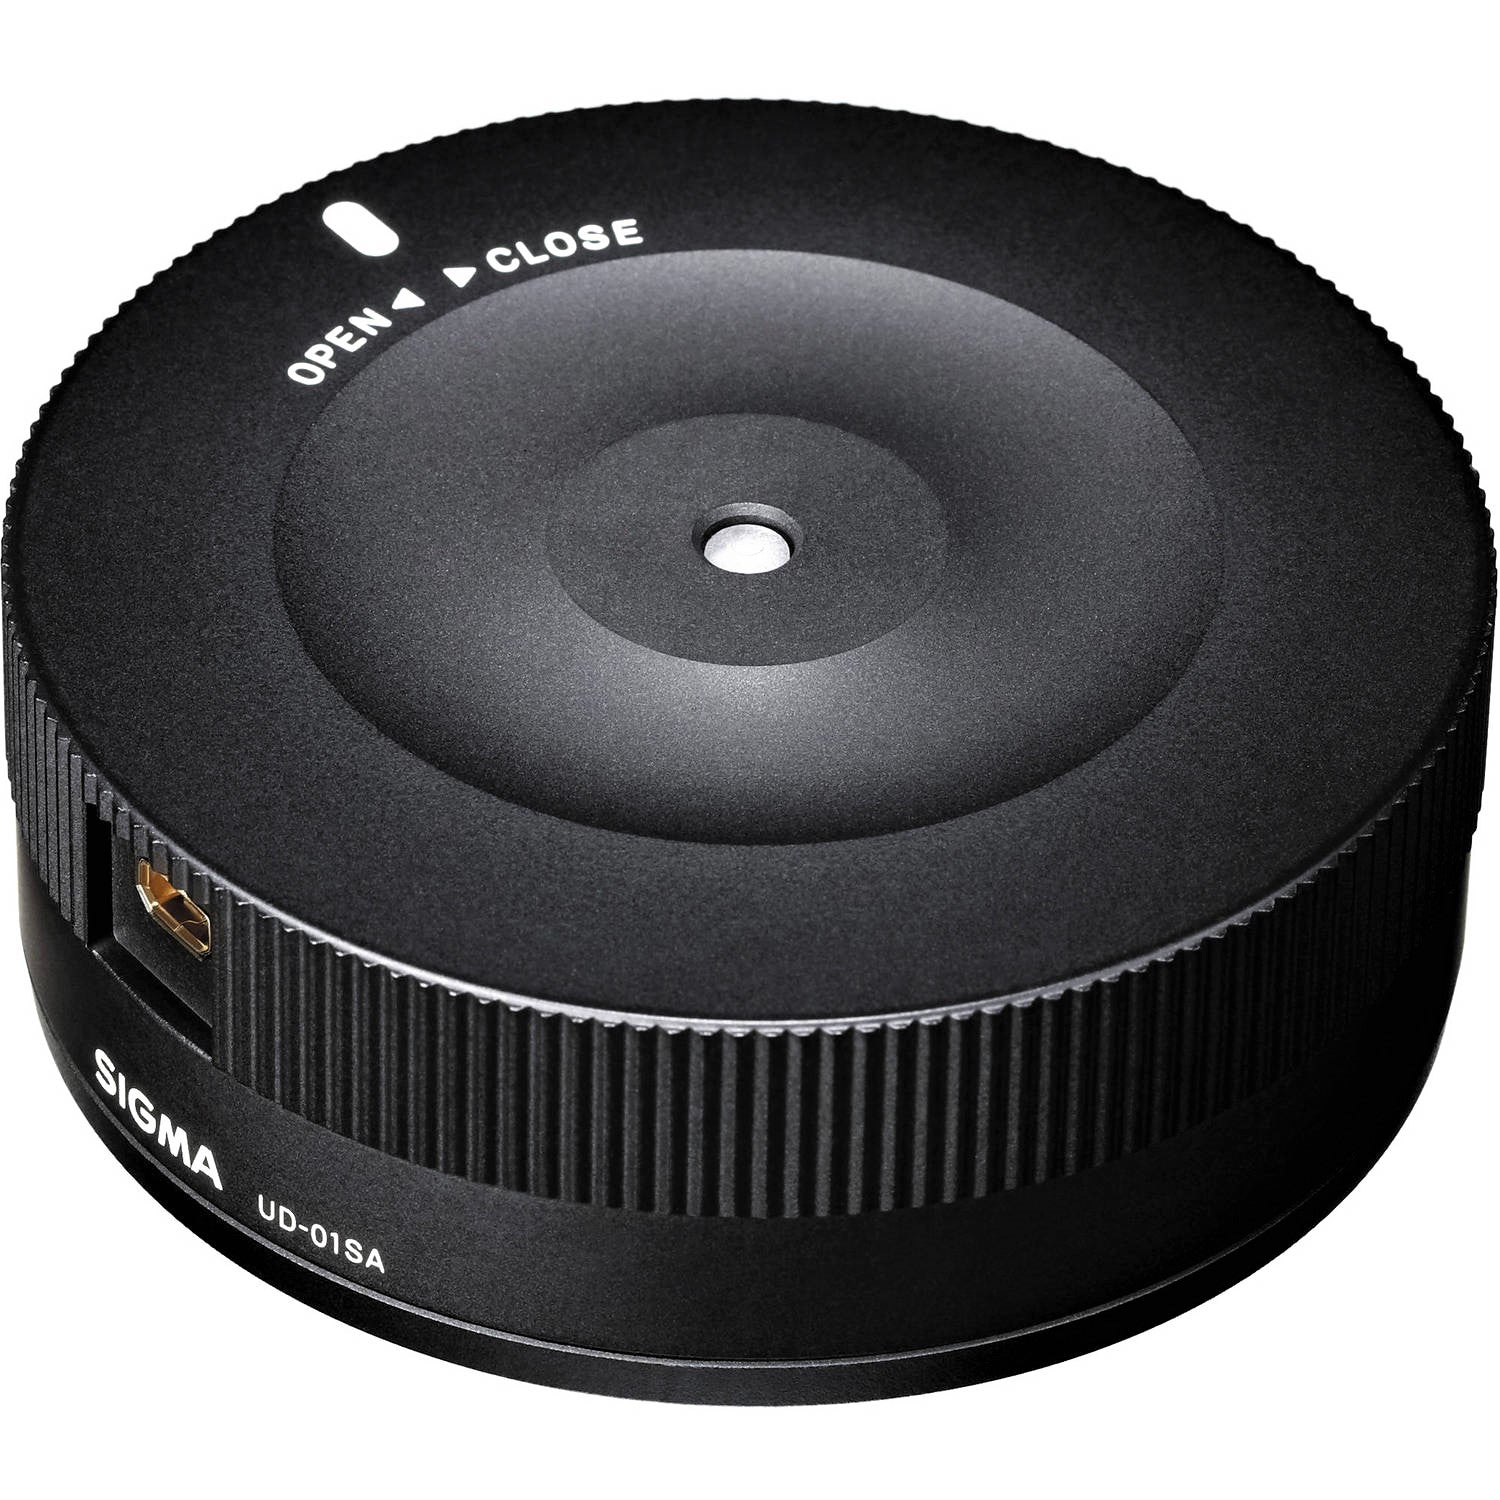 Sigma USB Dock for Pentax K Mount Lenses